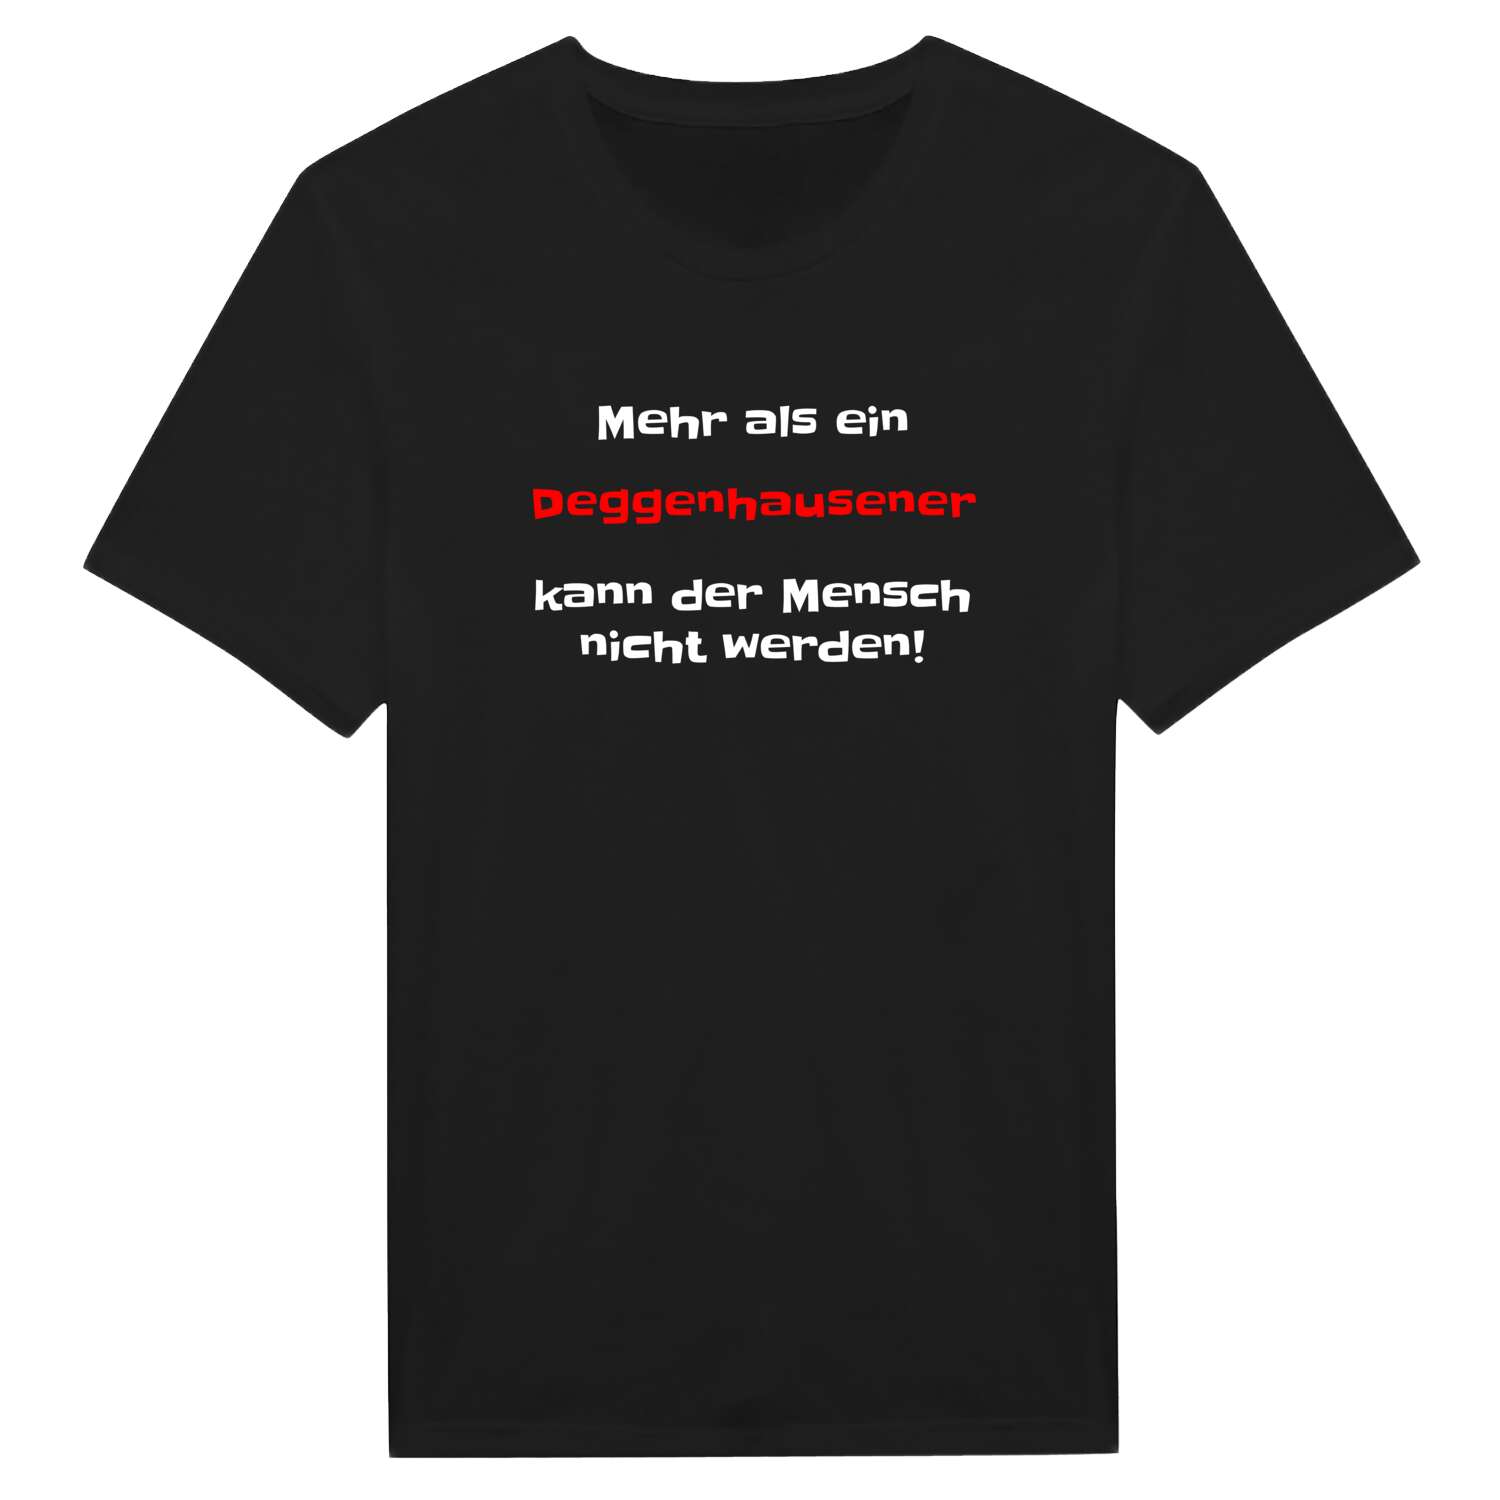 Deggenhausen T-Shirt »Mehr als ein«